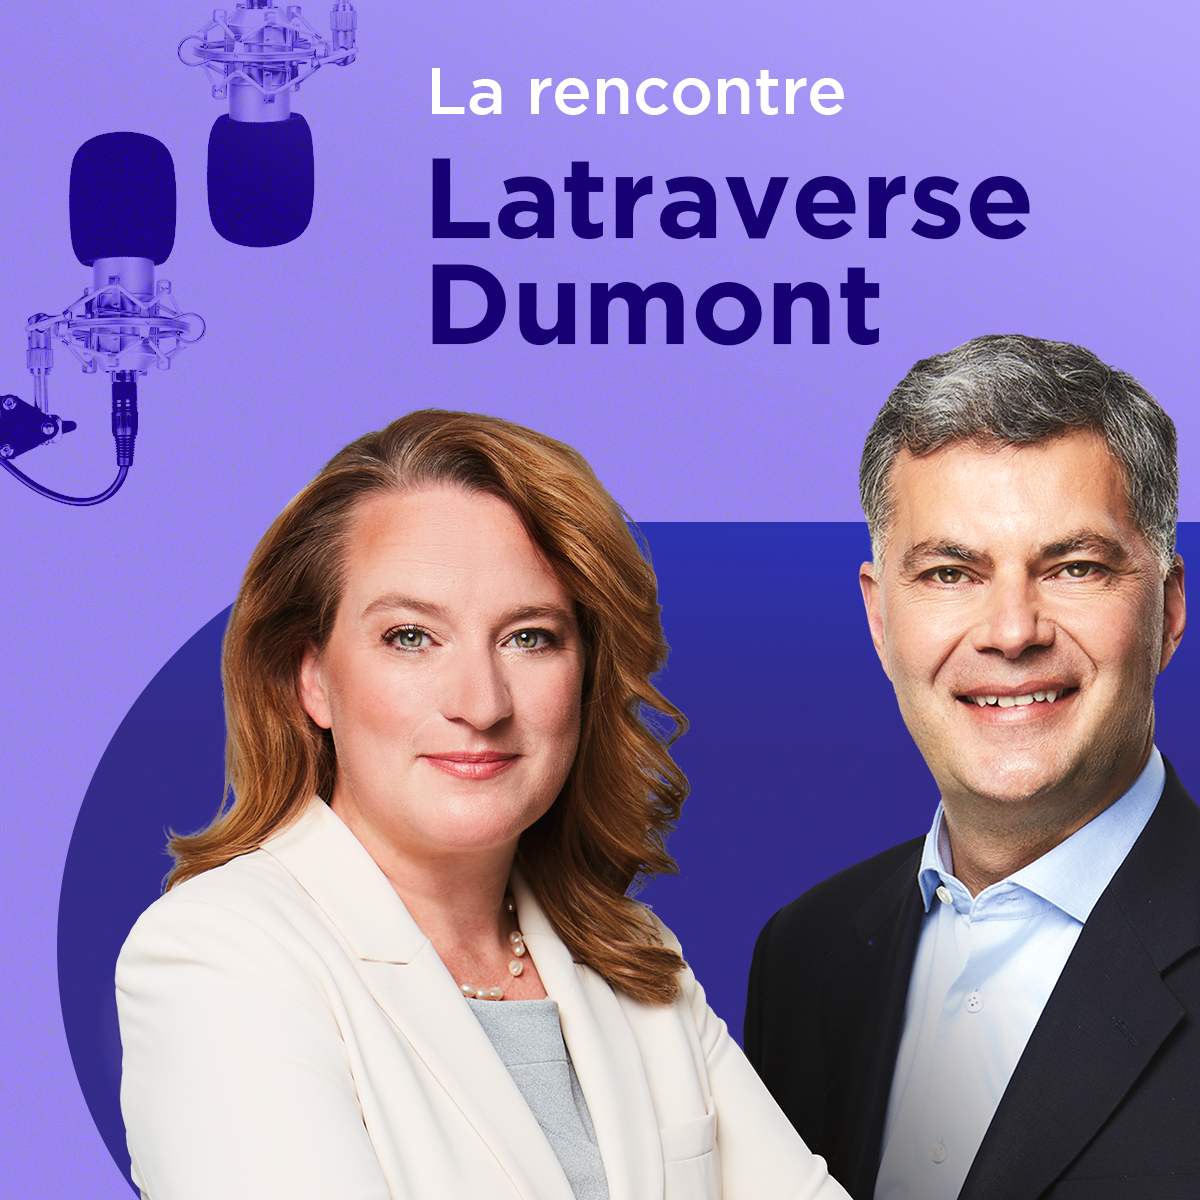 Ingérence : «M. Trudeau est volontairement pas clair», dit Emmanuelle Latraverse